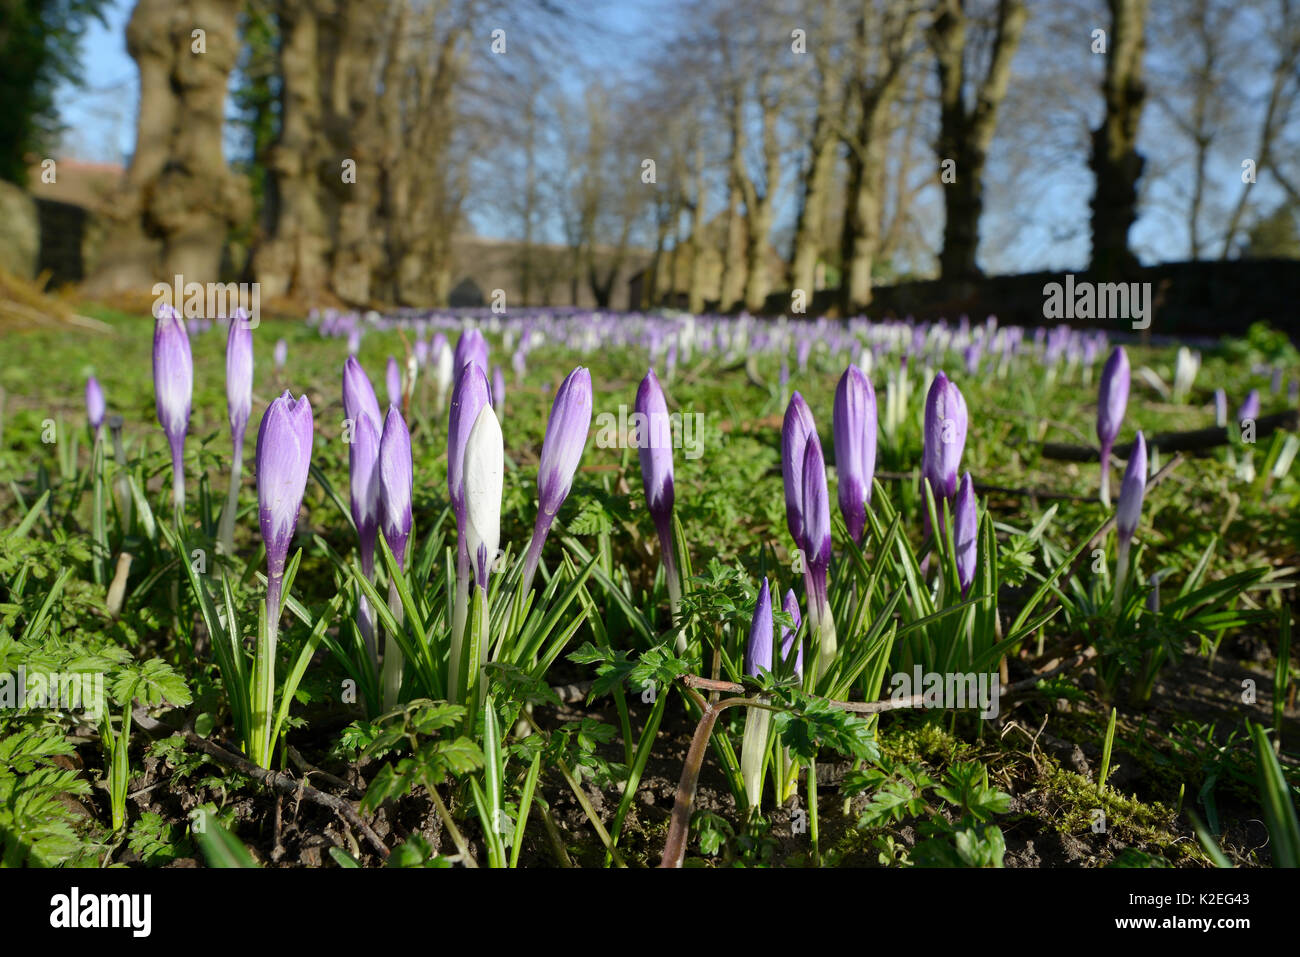 Carpet of Dutch crocuses (Crocus vernus) flowering in early spring, Wiltshire, UK, February. Stock Photo